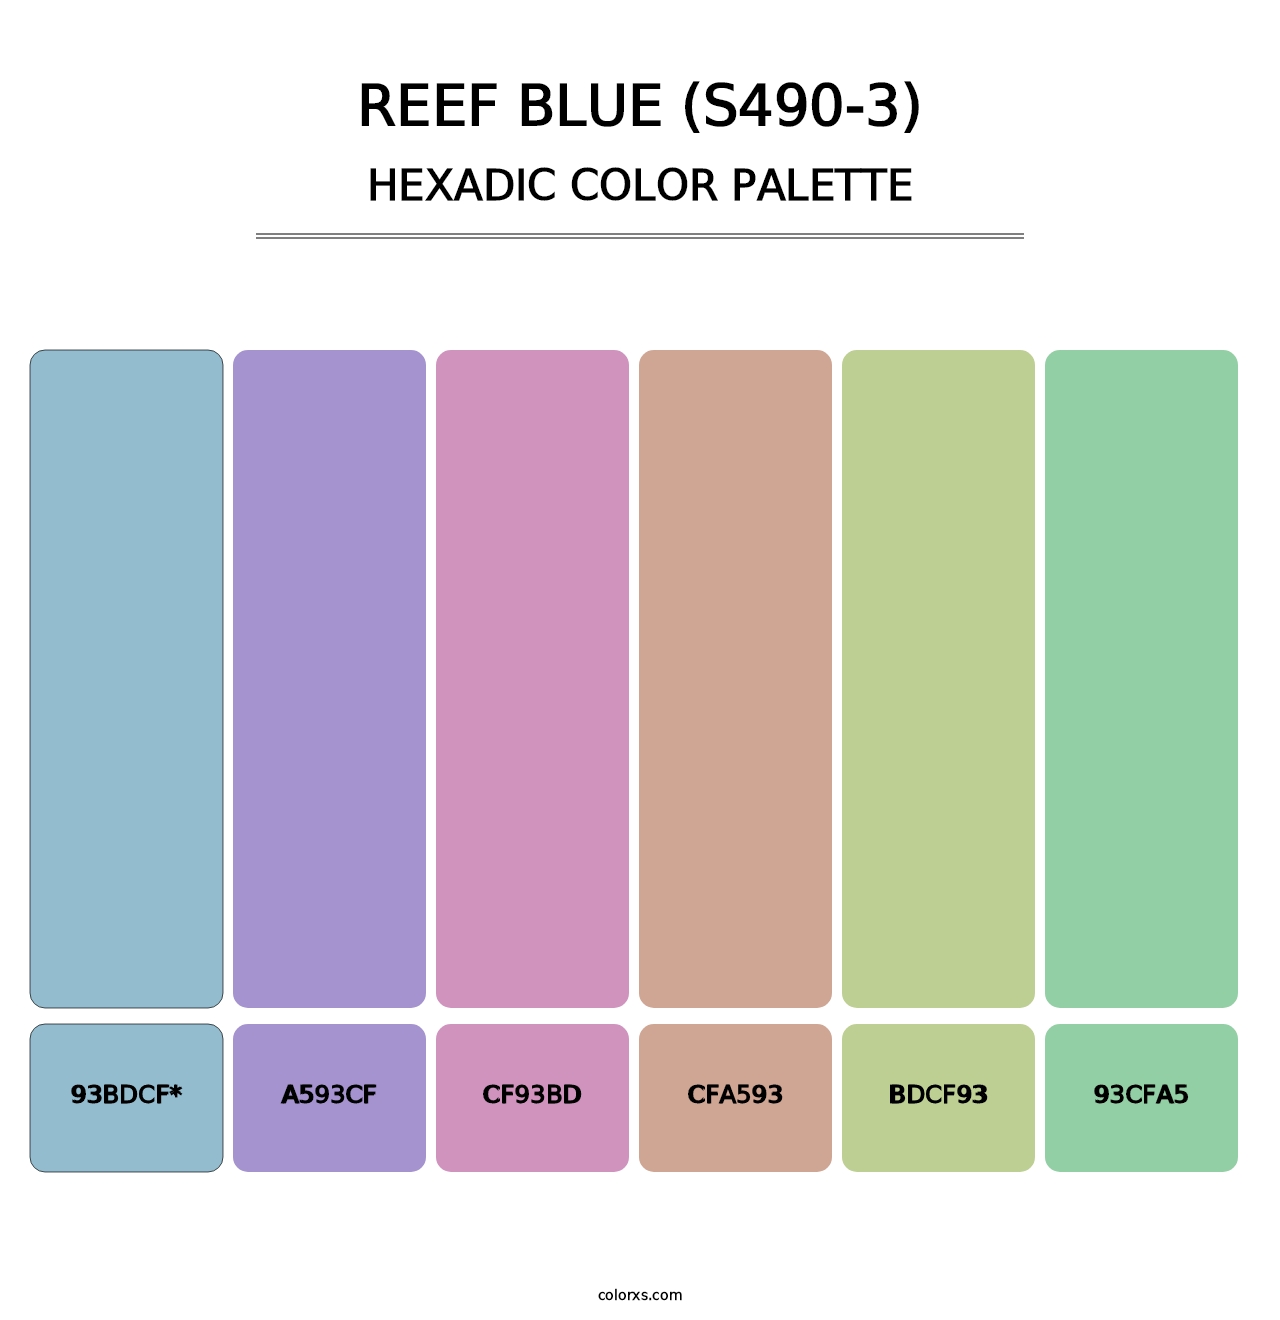 Reef Blue (S490-3) - Hexadic Color Palette